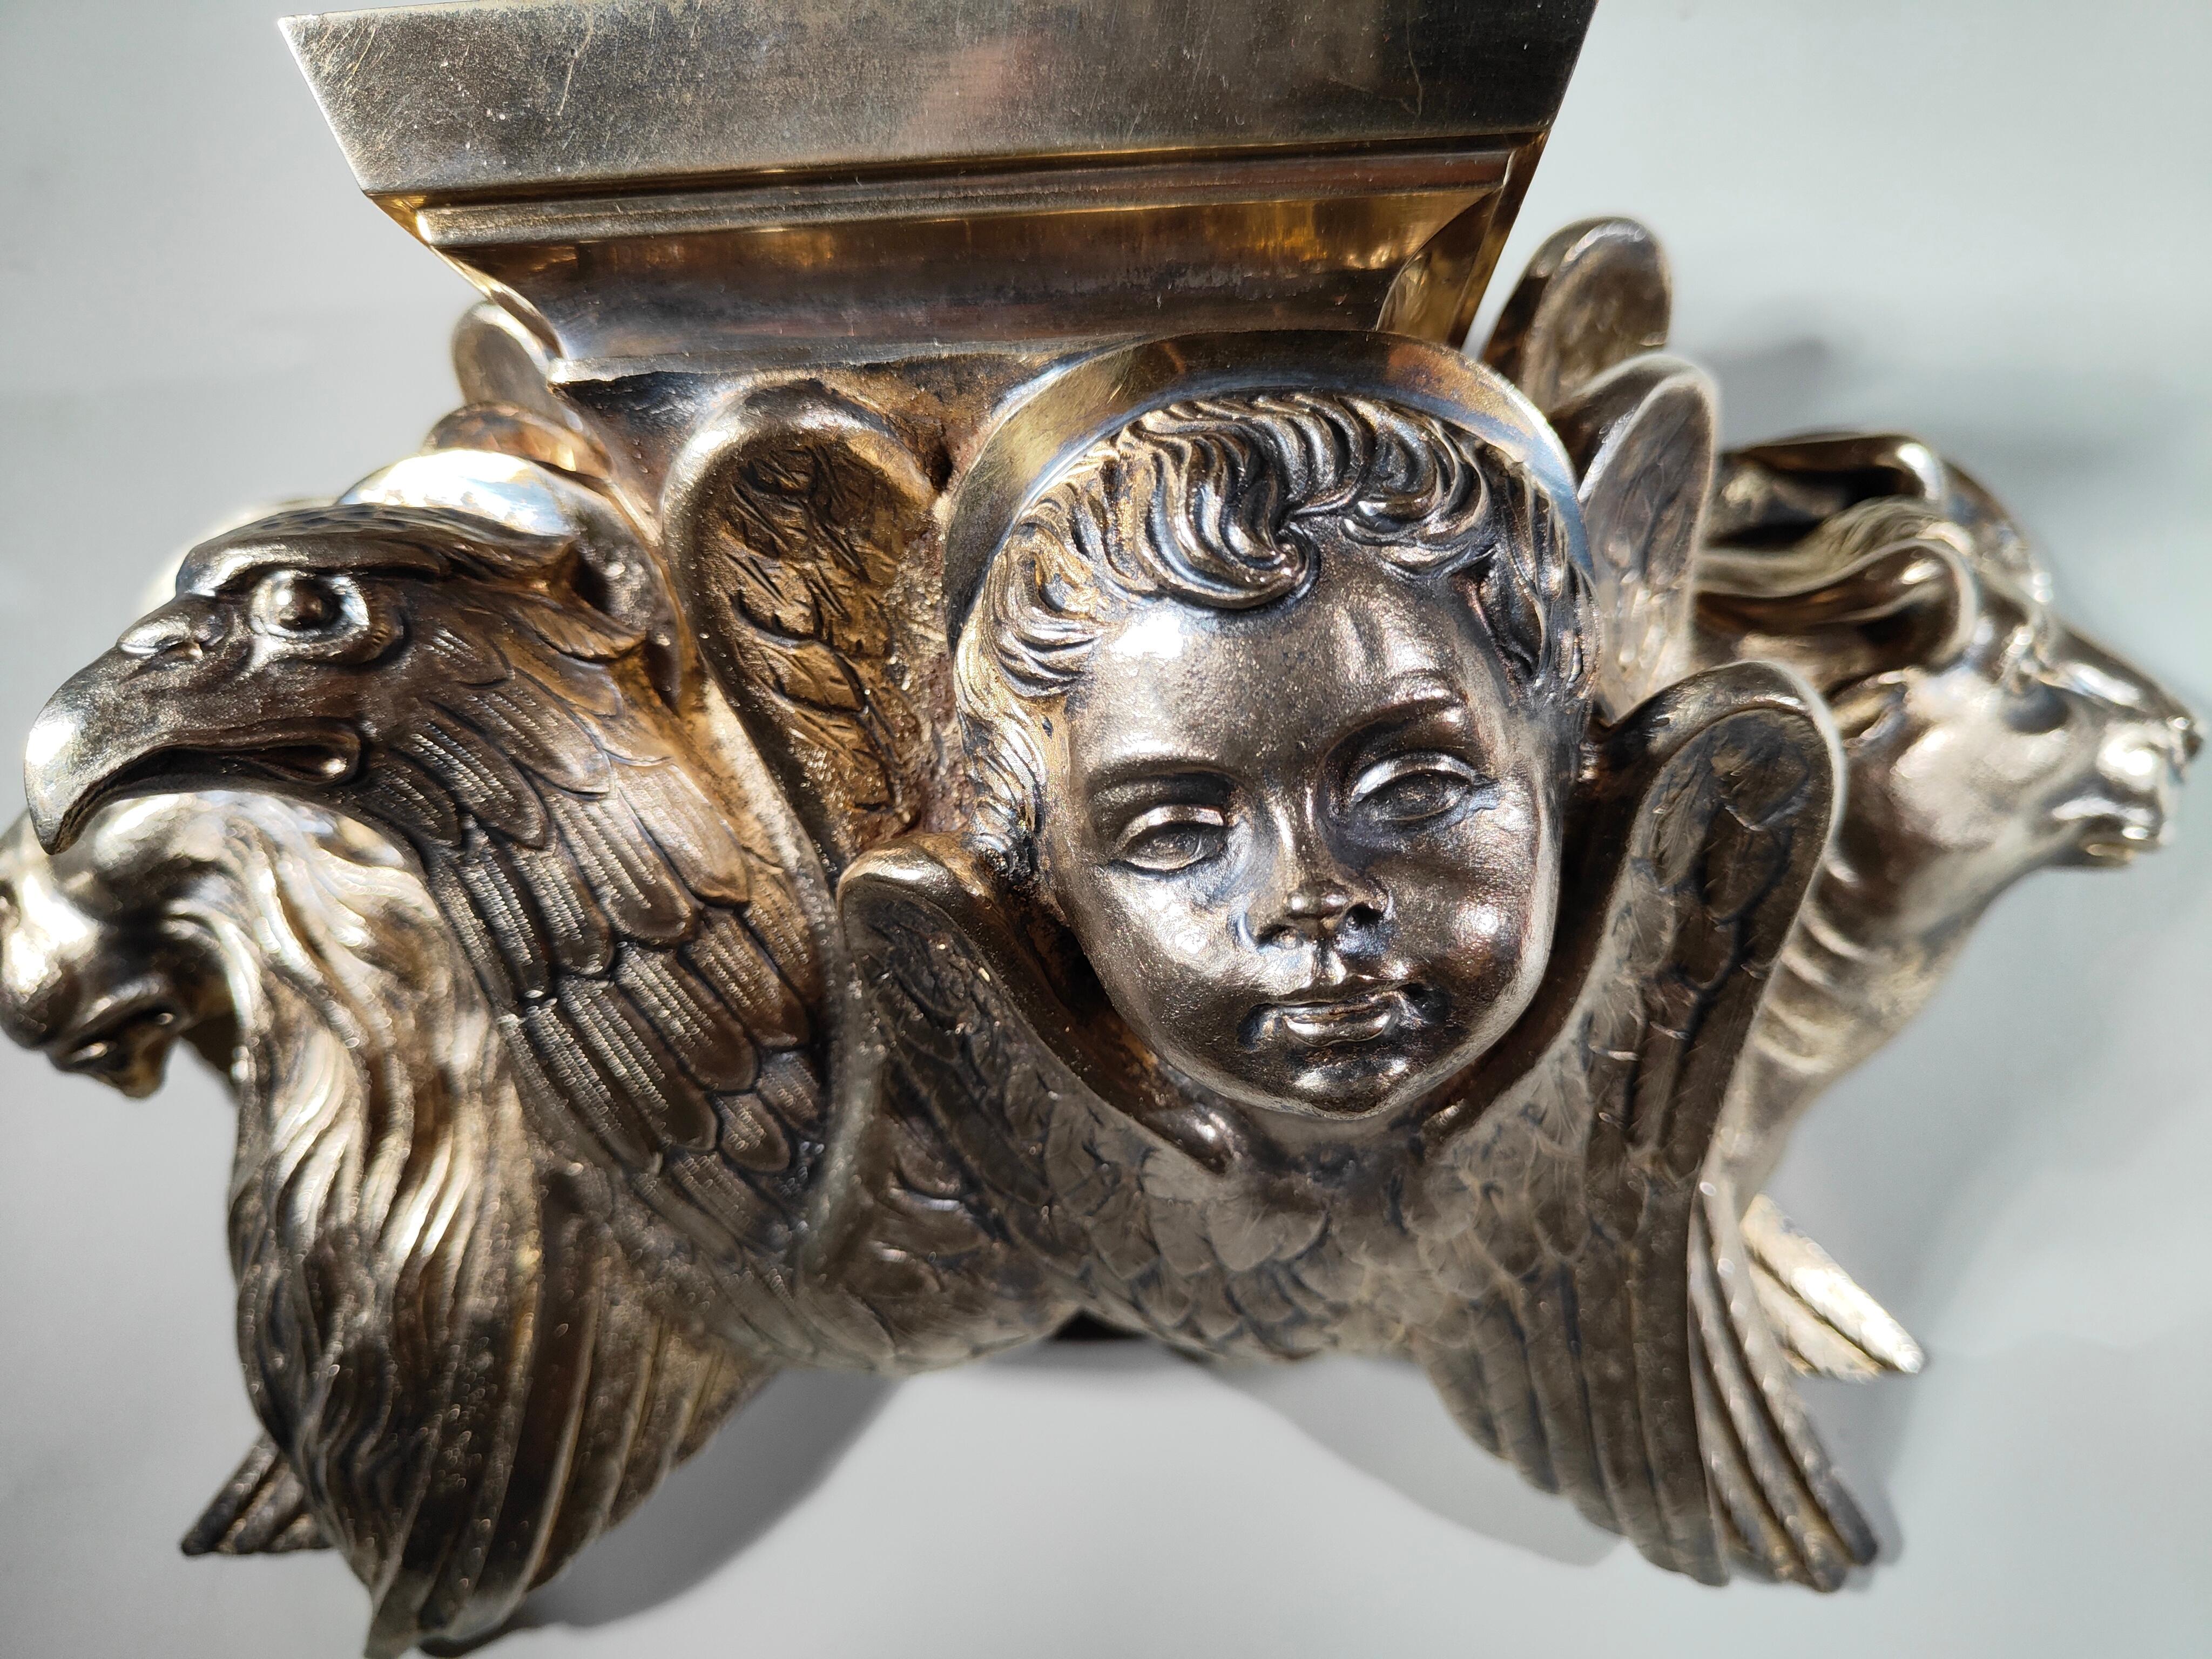 Cet élégant piédestal du XIXe siècle, réalisé en bronze doré et finement ciselé, se présente comme un chef-d'œuvre de l'artisanat de son époque. Mesurant 36x23x12 cm, ce piédestal témoigne du travail minutieux et raffiné caractéristique du XIXe